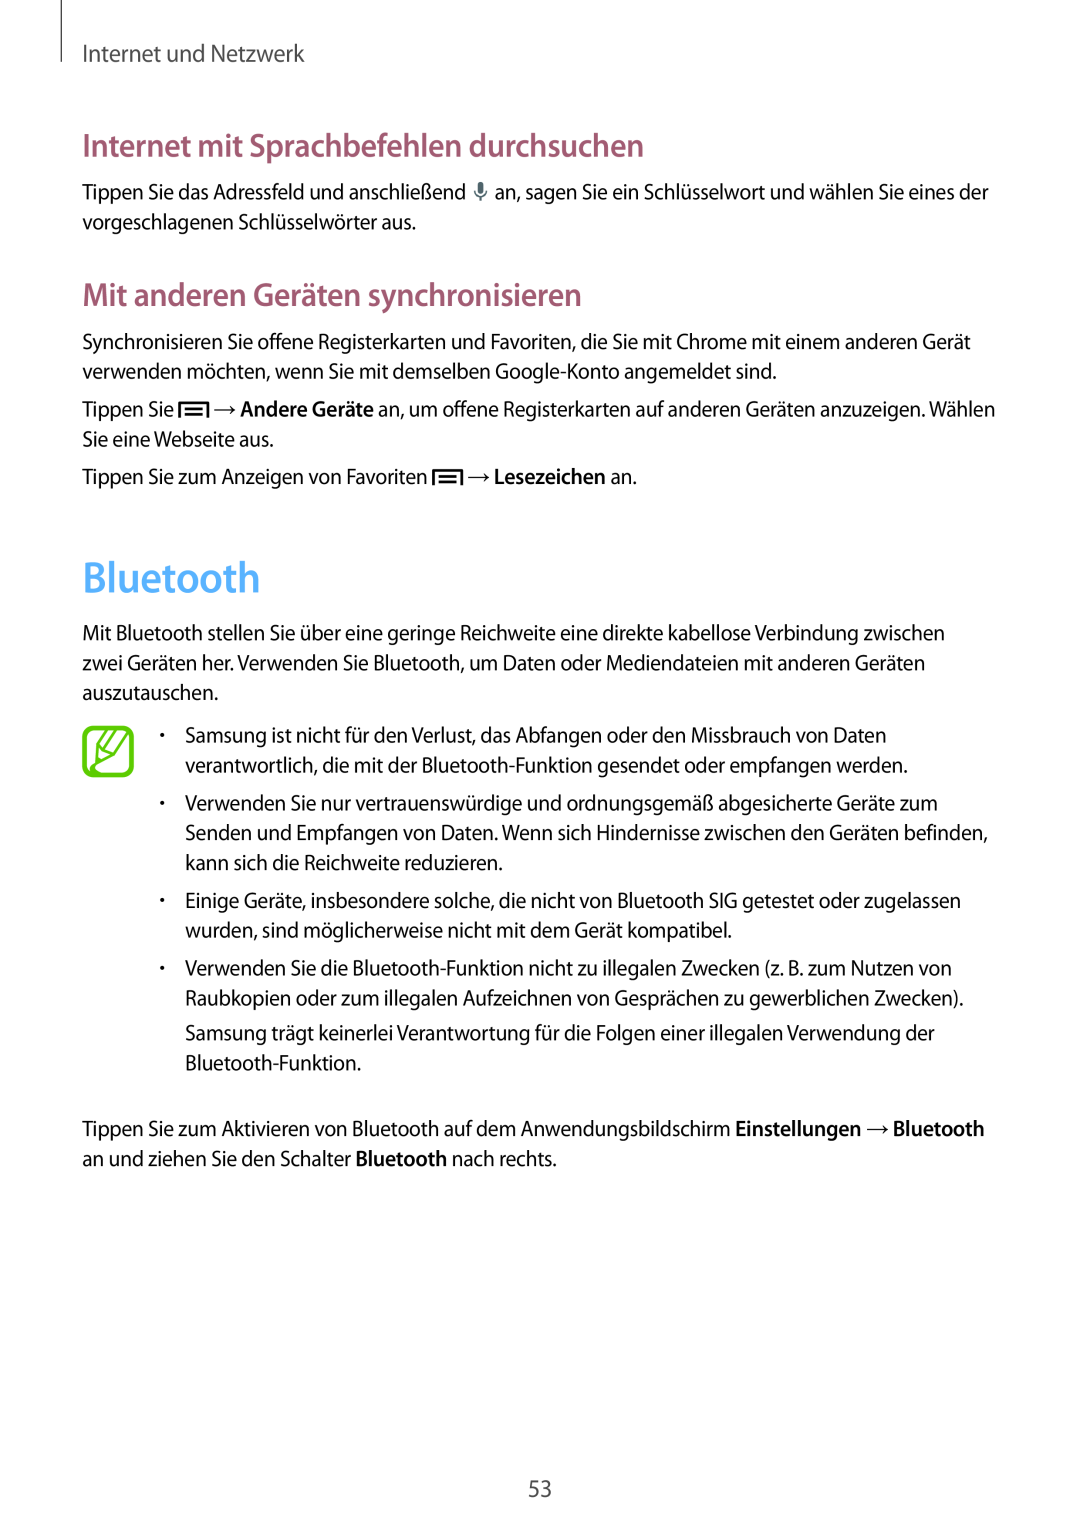 Samsung SM-T3100MKAEUR manual Bluetooth, Mit anderen Geräten synchronisieren, Internet mit Sprachbefehlen durchsuchen 